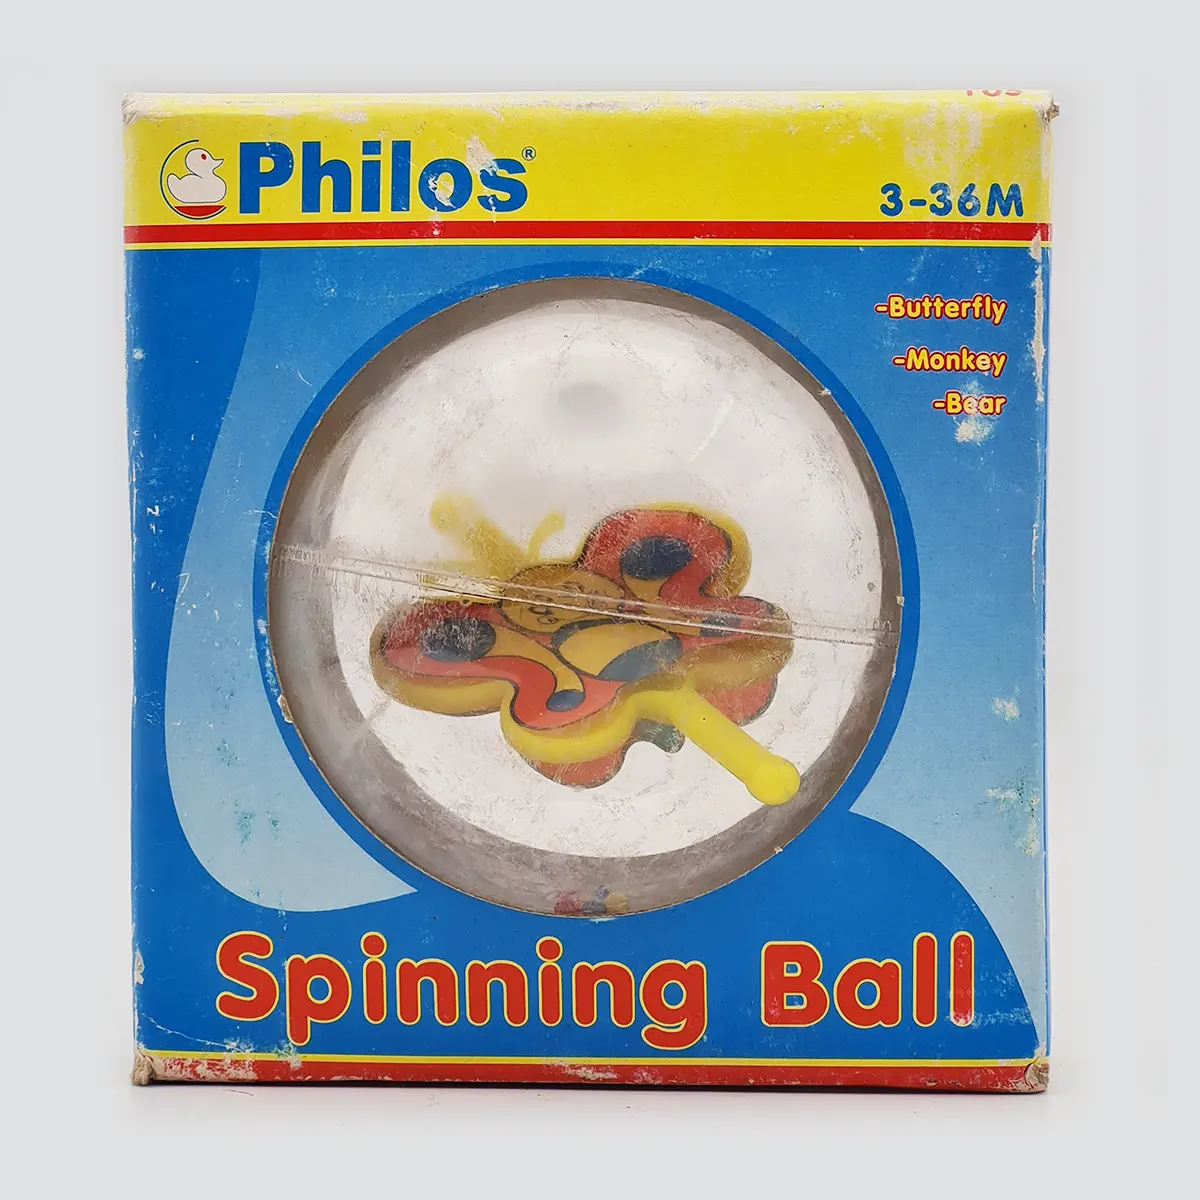 Philos Spinning Ball